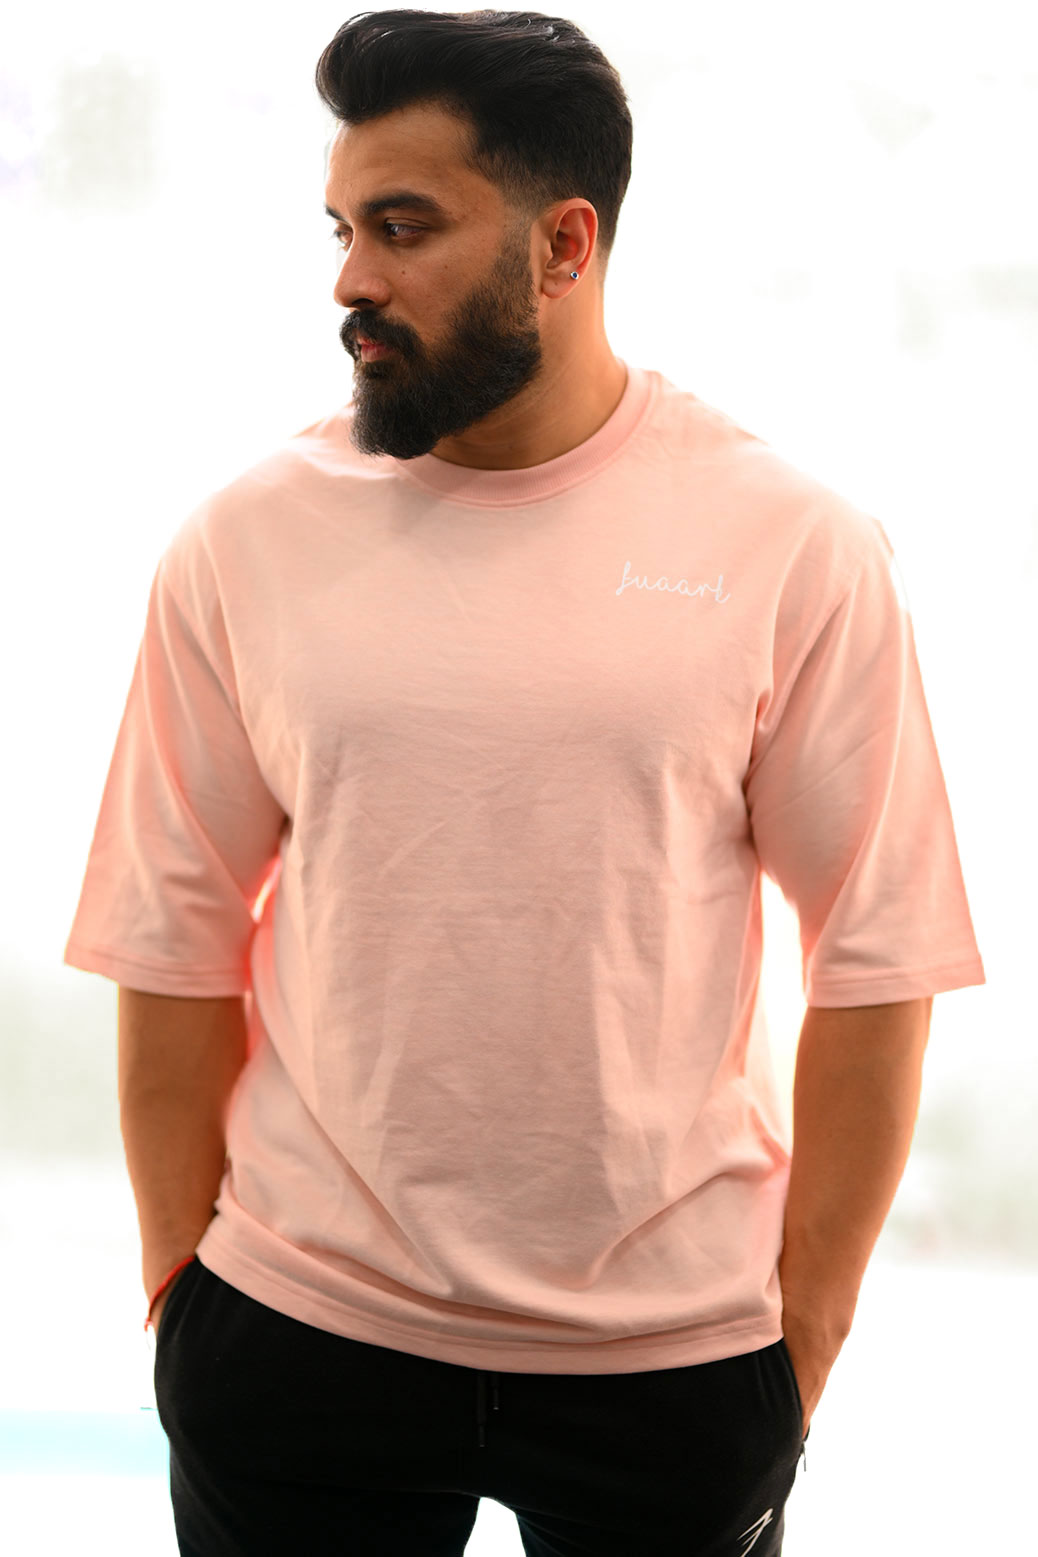 Fuaark Oversize Pink For Men | Fuaark tshirts